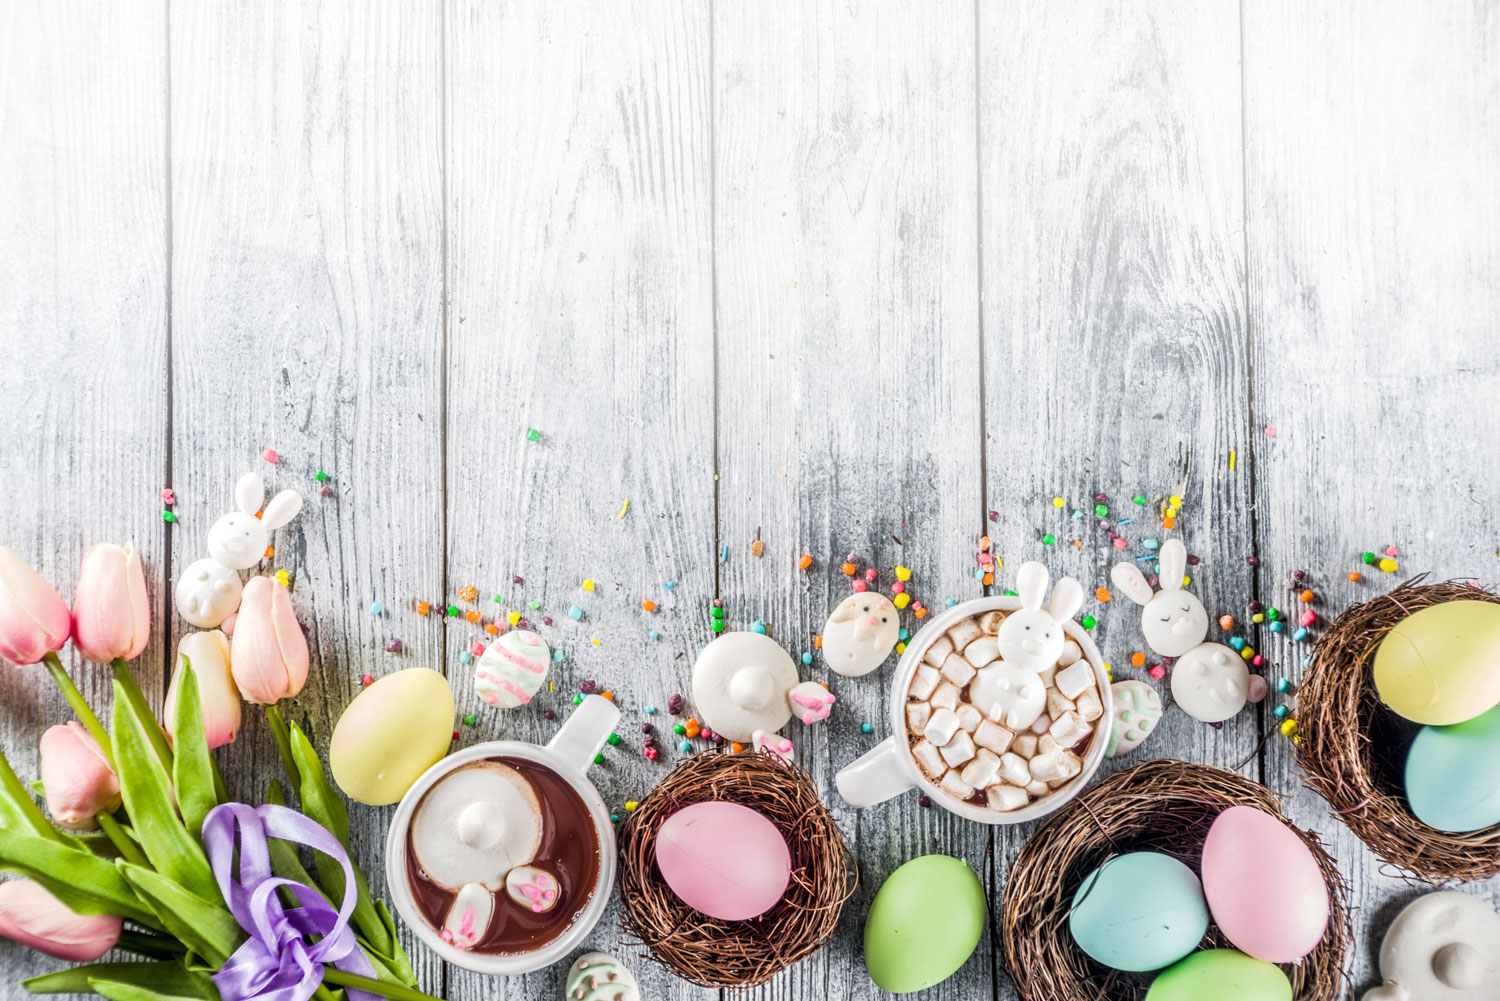 Décorez votre table d’œufs colorés, fleurs et petits lapins. Une bonne petite bouffe sur une jolie table, le plaisir est double !